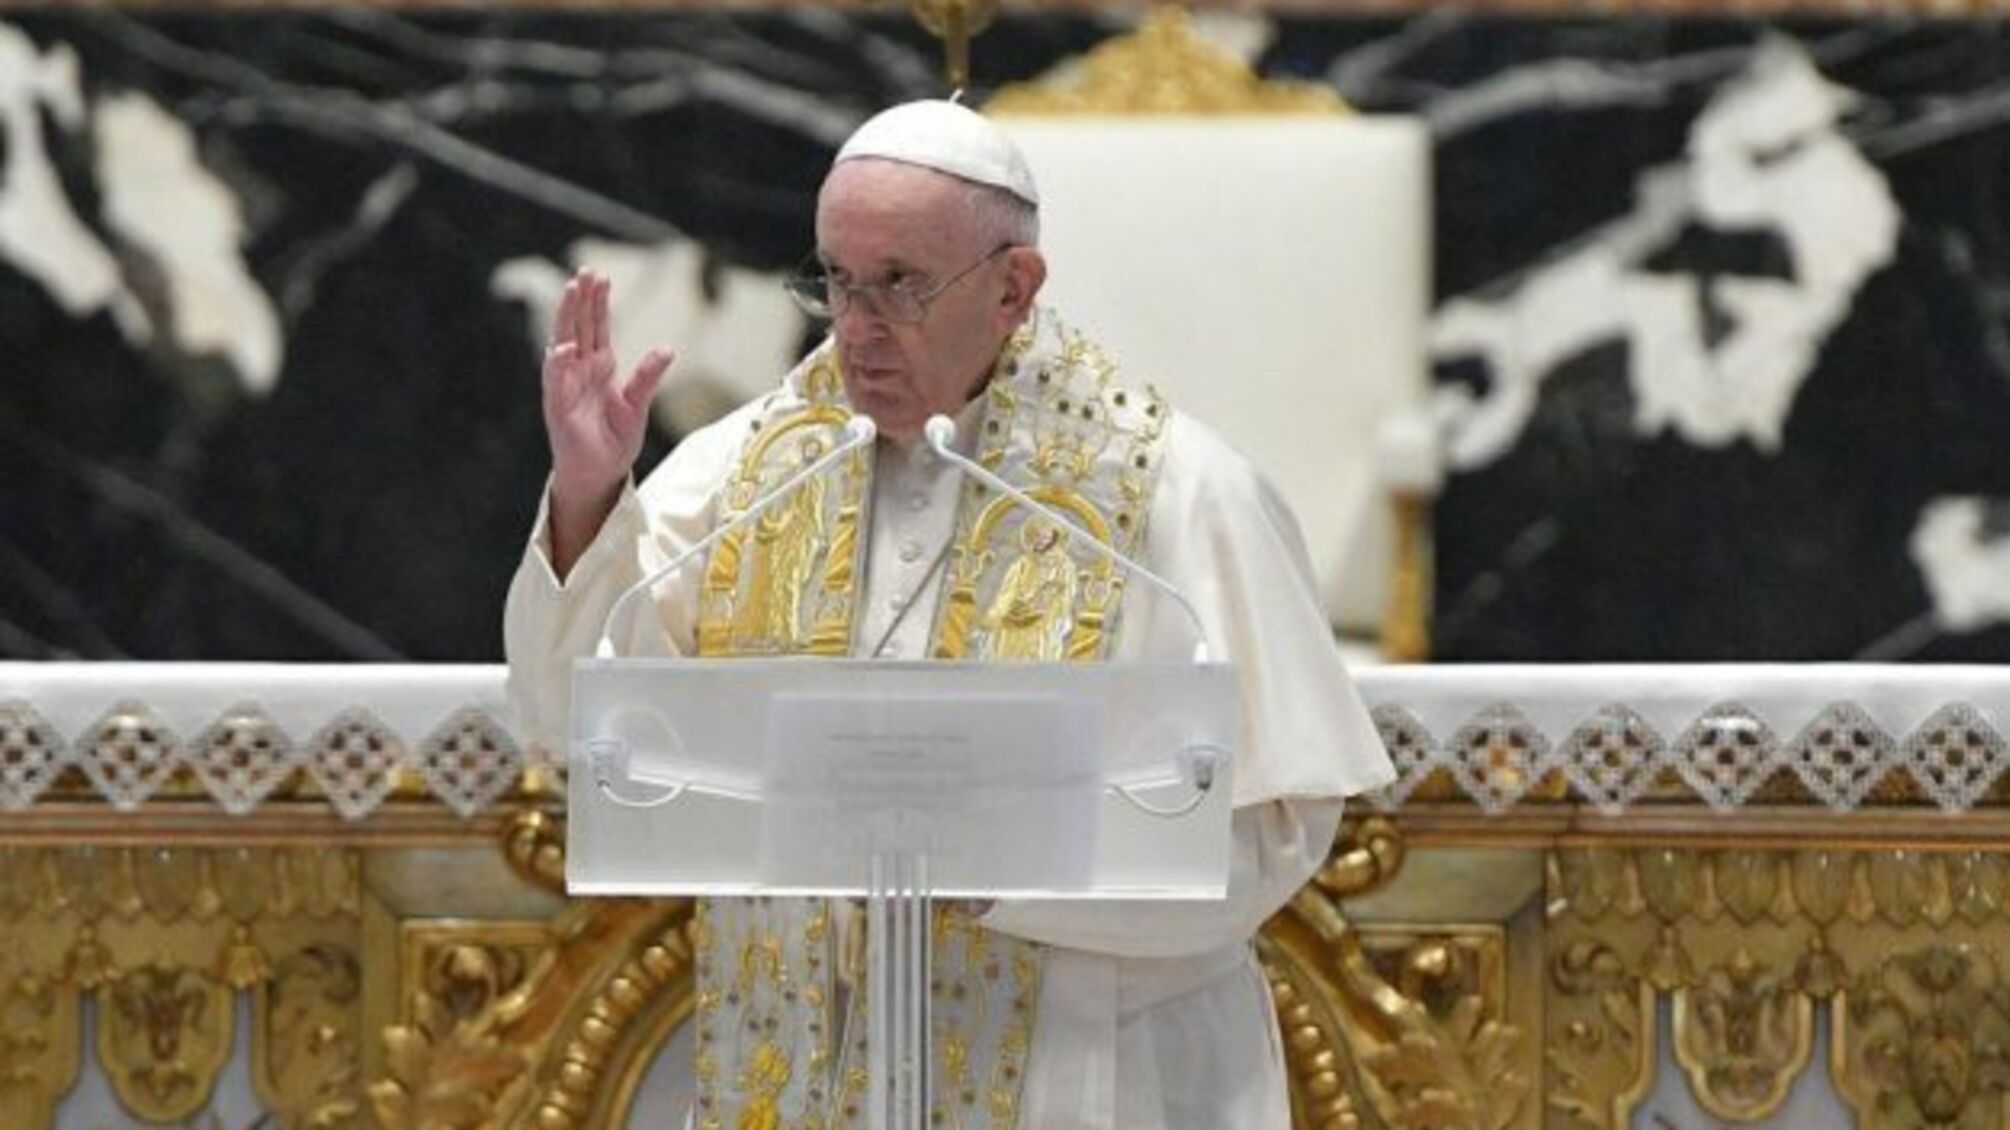 Шмигаль передав запрошення відвідати Україну Папі Римському Франциску